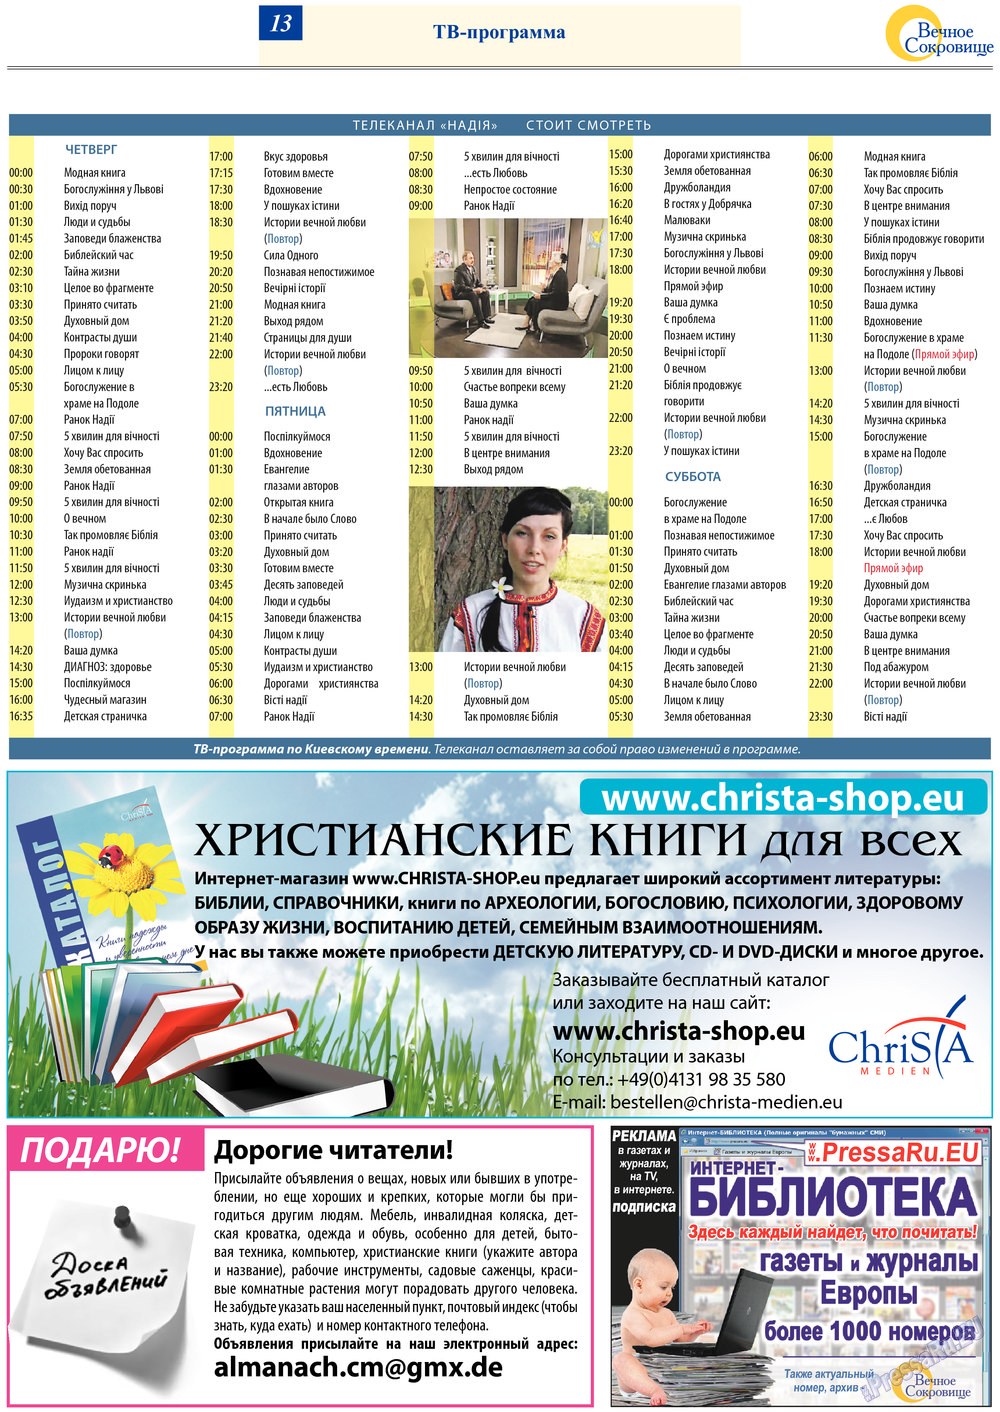 Вечное сокровище, газета. 2013 №2 стр.13